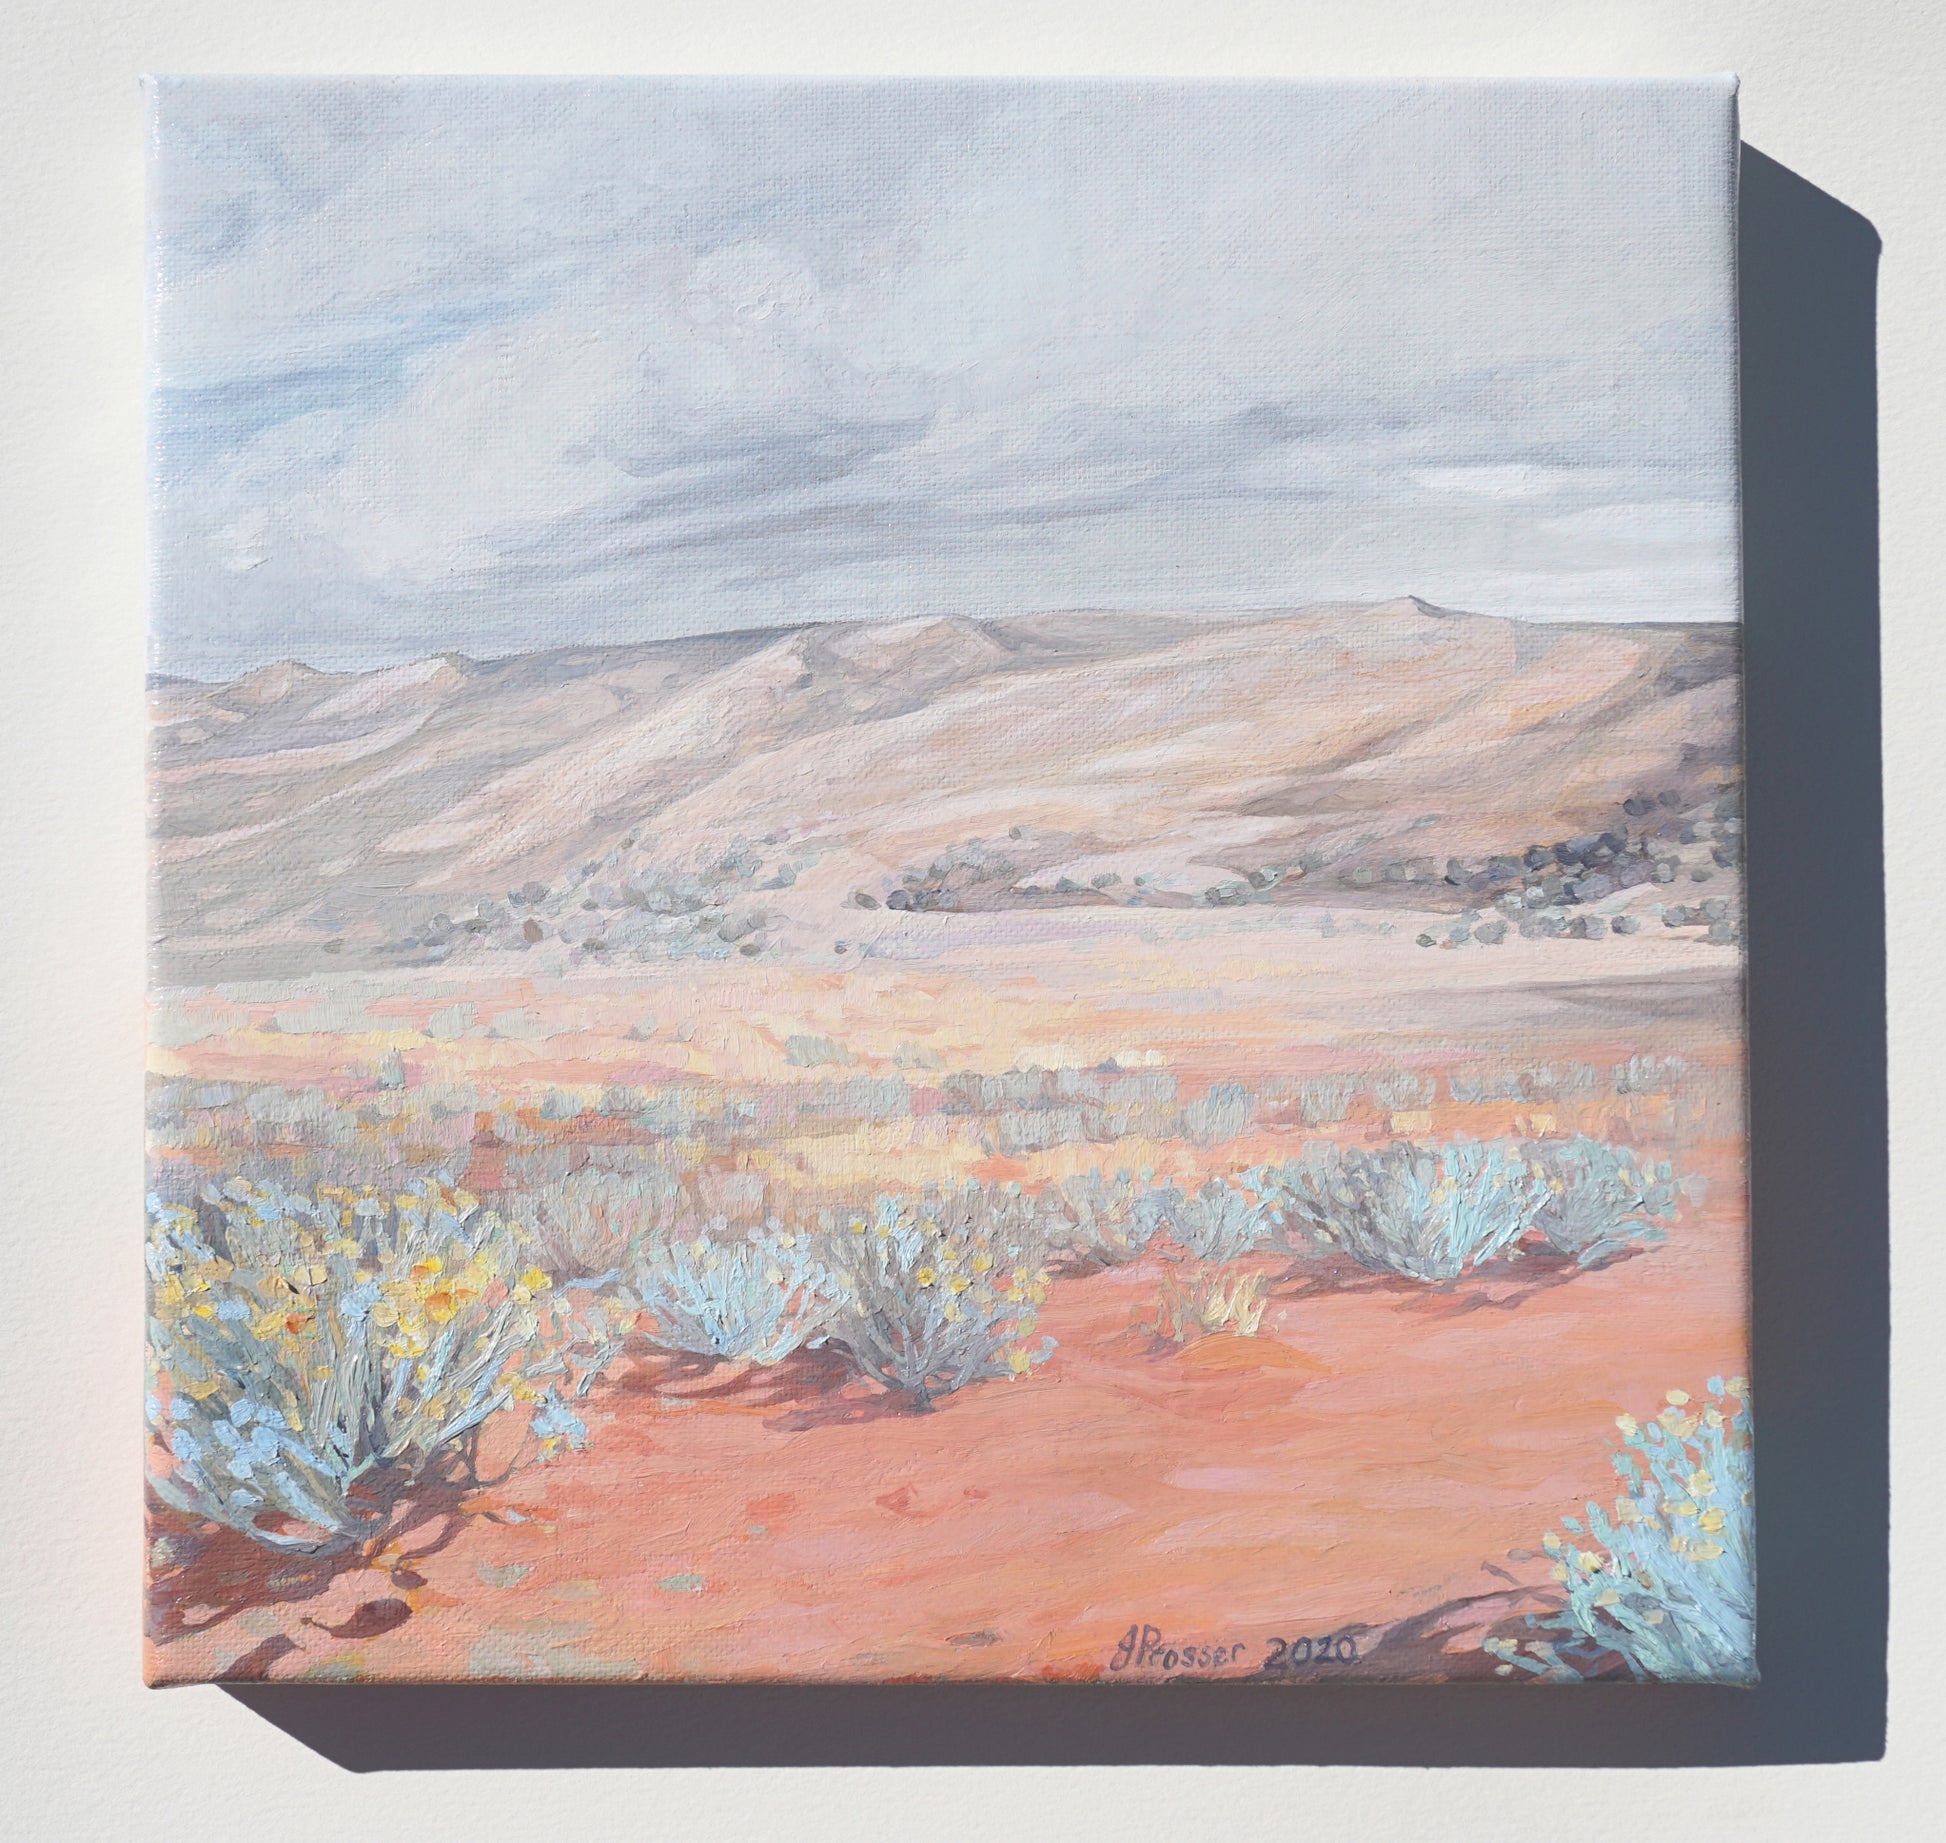 Australian artist Jaime Prosser painting titled 'Desert & Blue Bush Landscape'